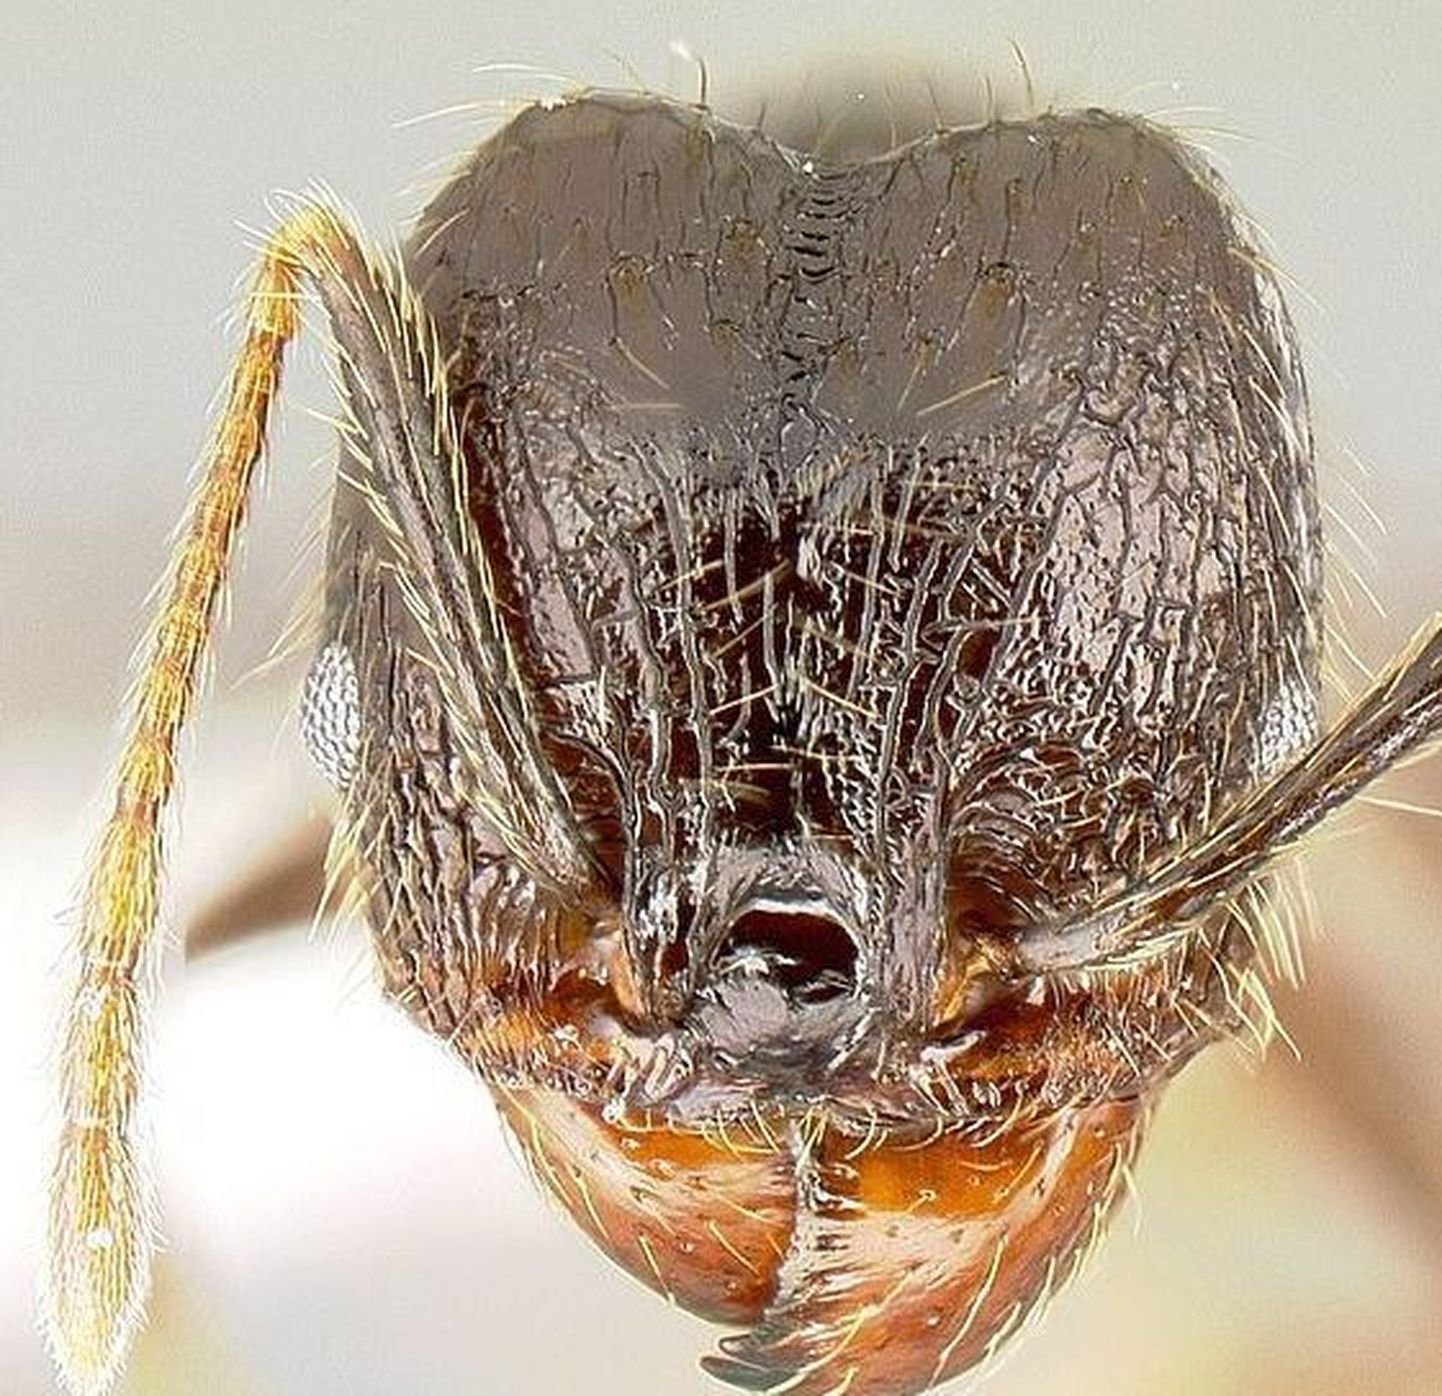 Geeniaktiveeringu tulemusena saadi «supersõdur» sipelgad